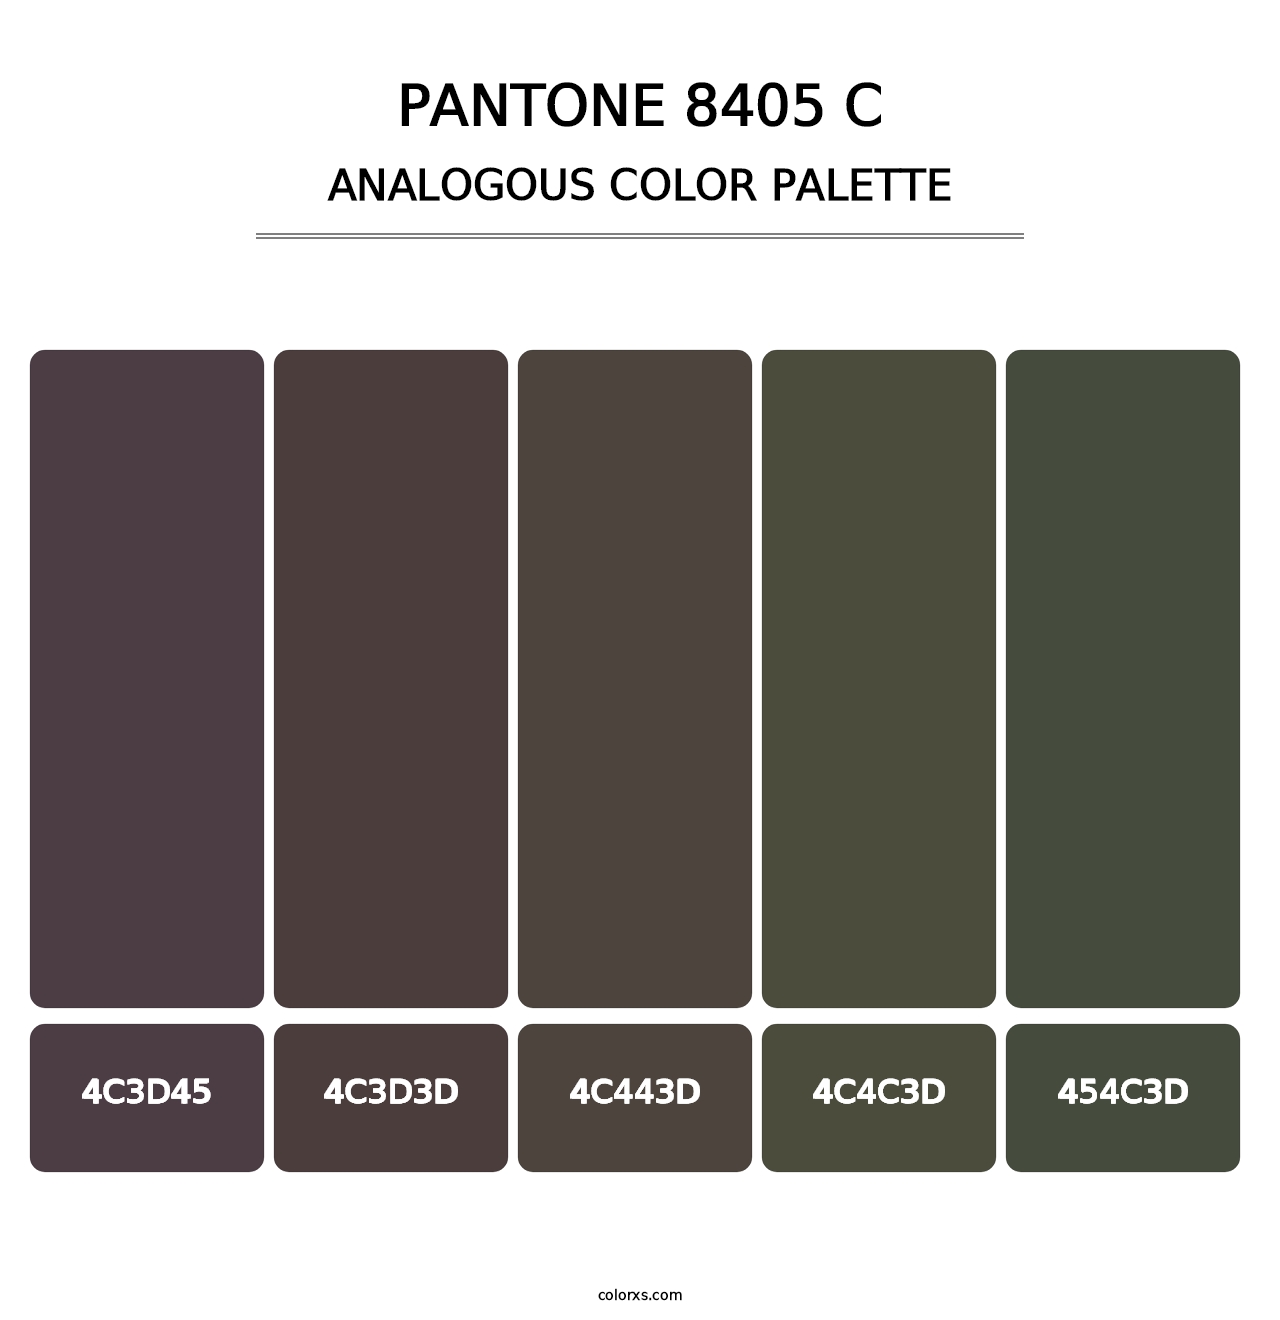 PANTONE 8405 C - Analogous Color Palette